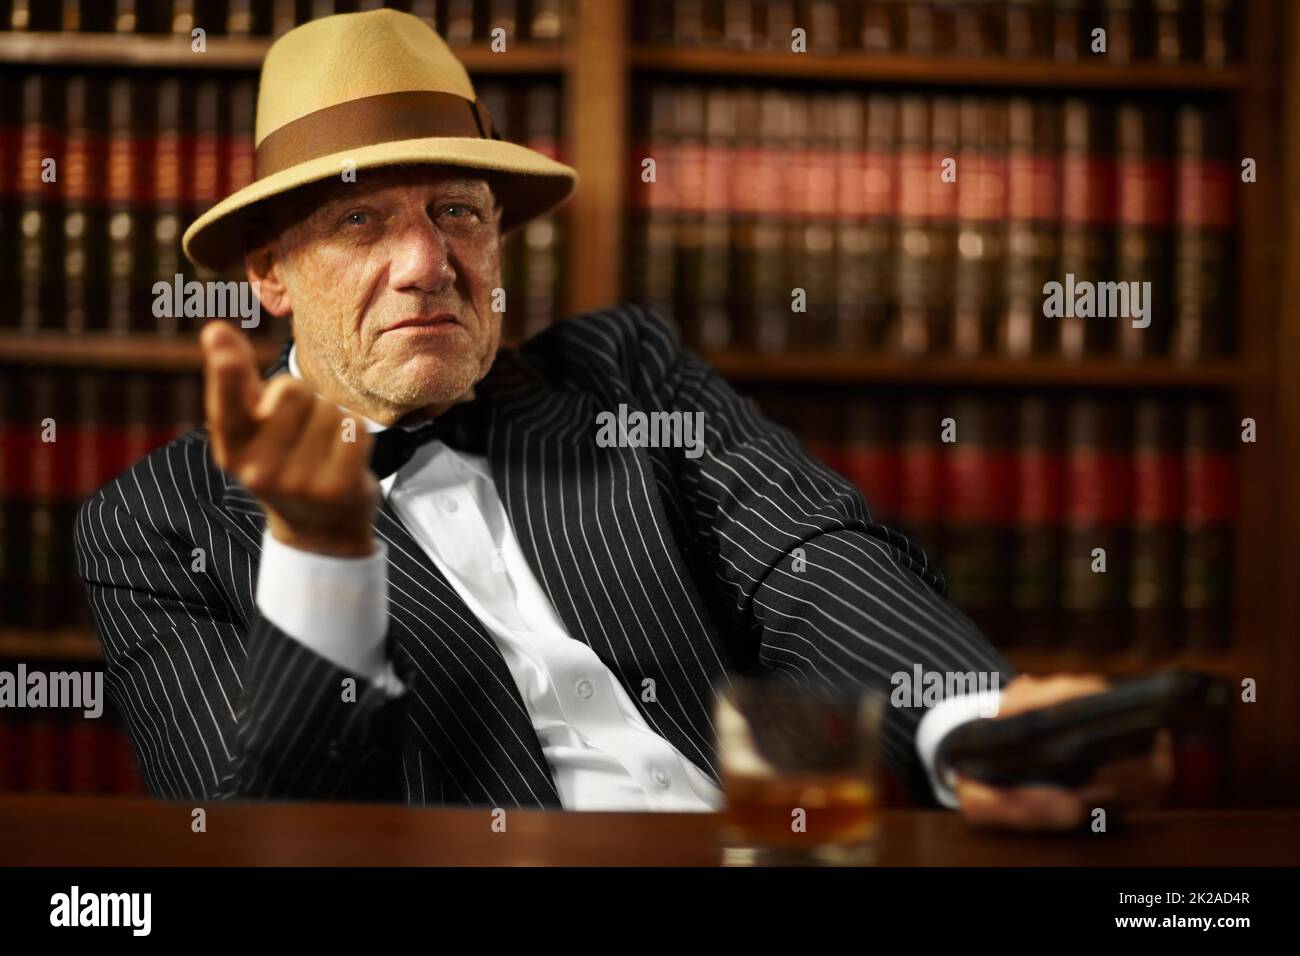 Er leitet eine große kriminelle Organisation. Gealterter Mob-Boss, der einen Hut trägt und beim Zeigen ernst aussieht. Stockfoto